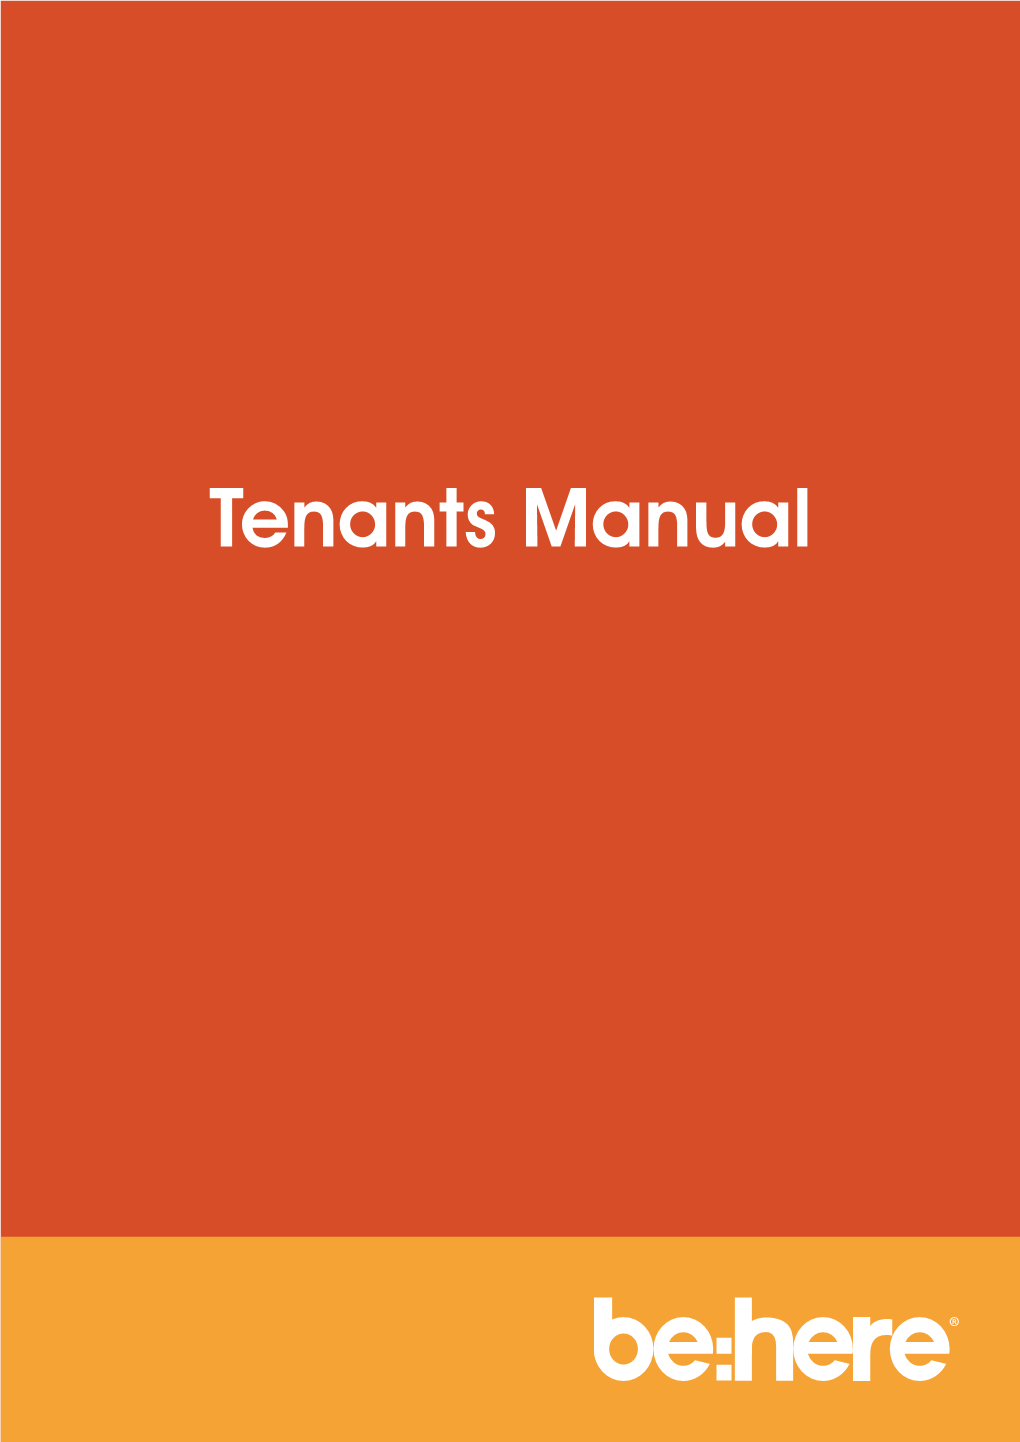 Tenants Manual Contents